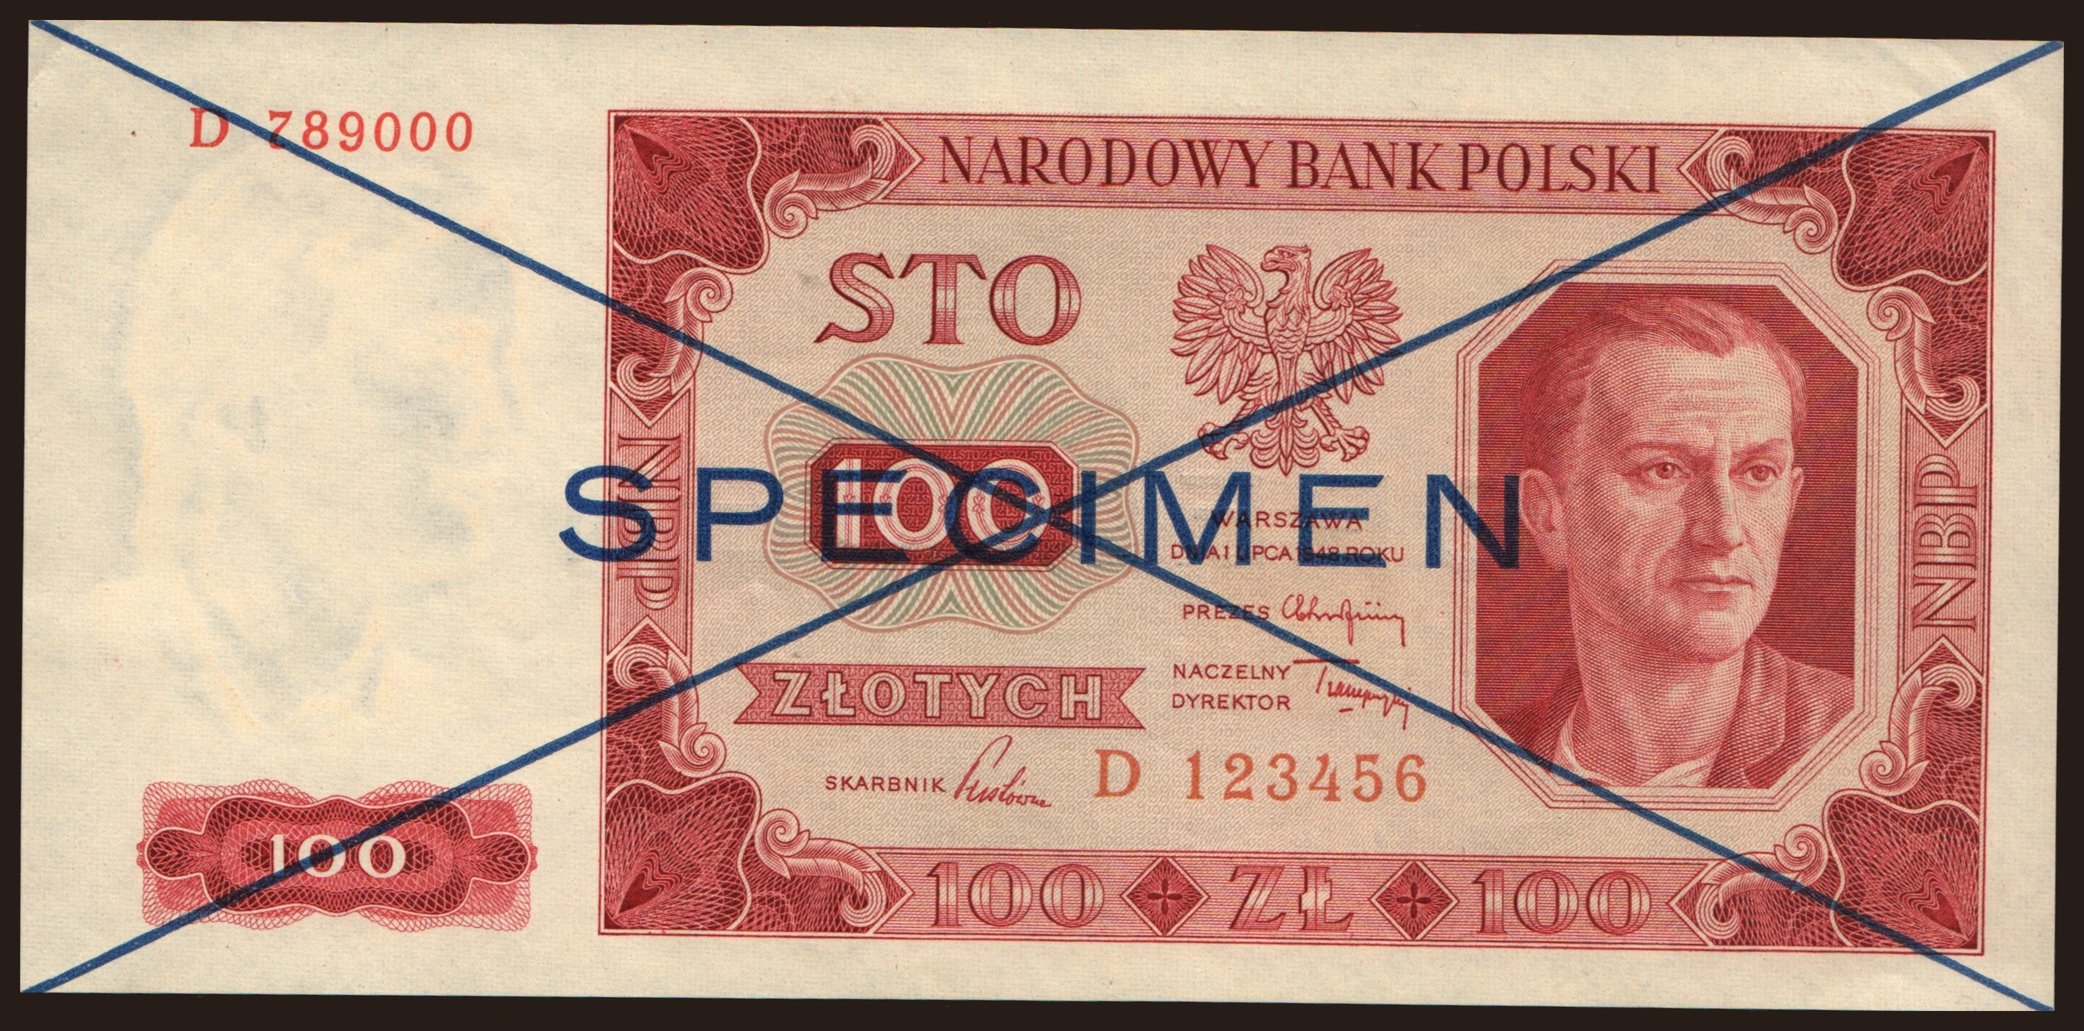 100 zlotych, 1948, SPECIMEN